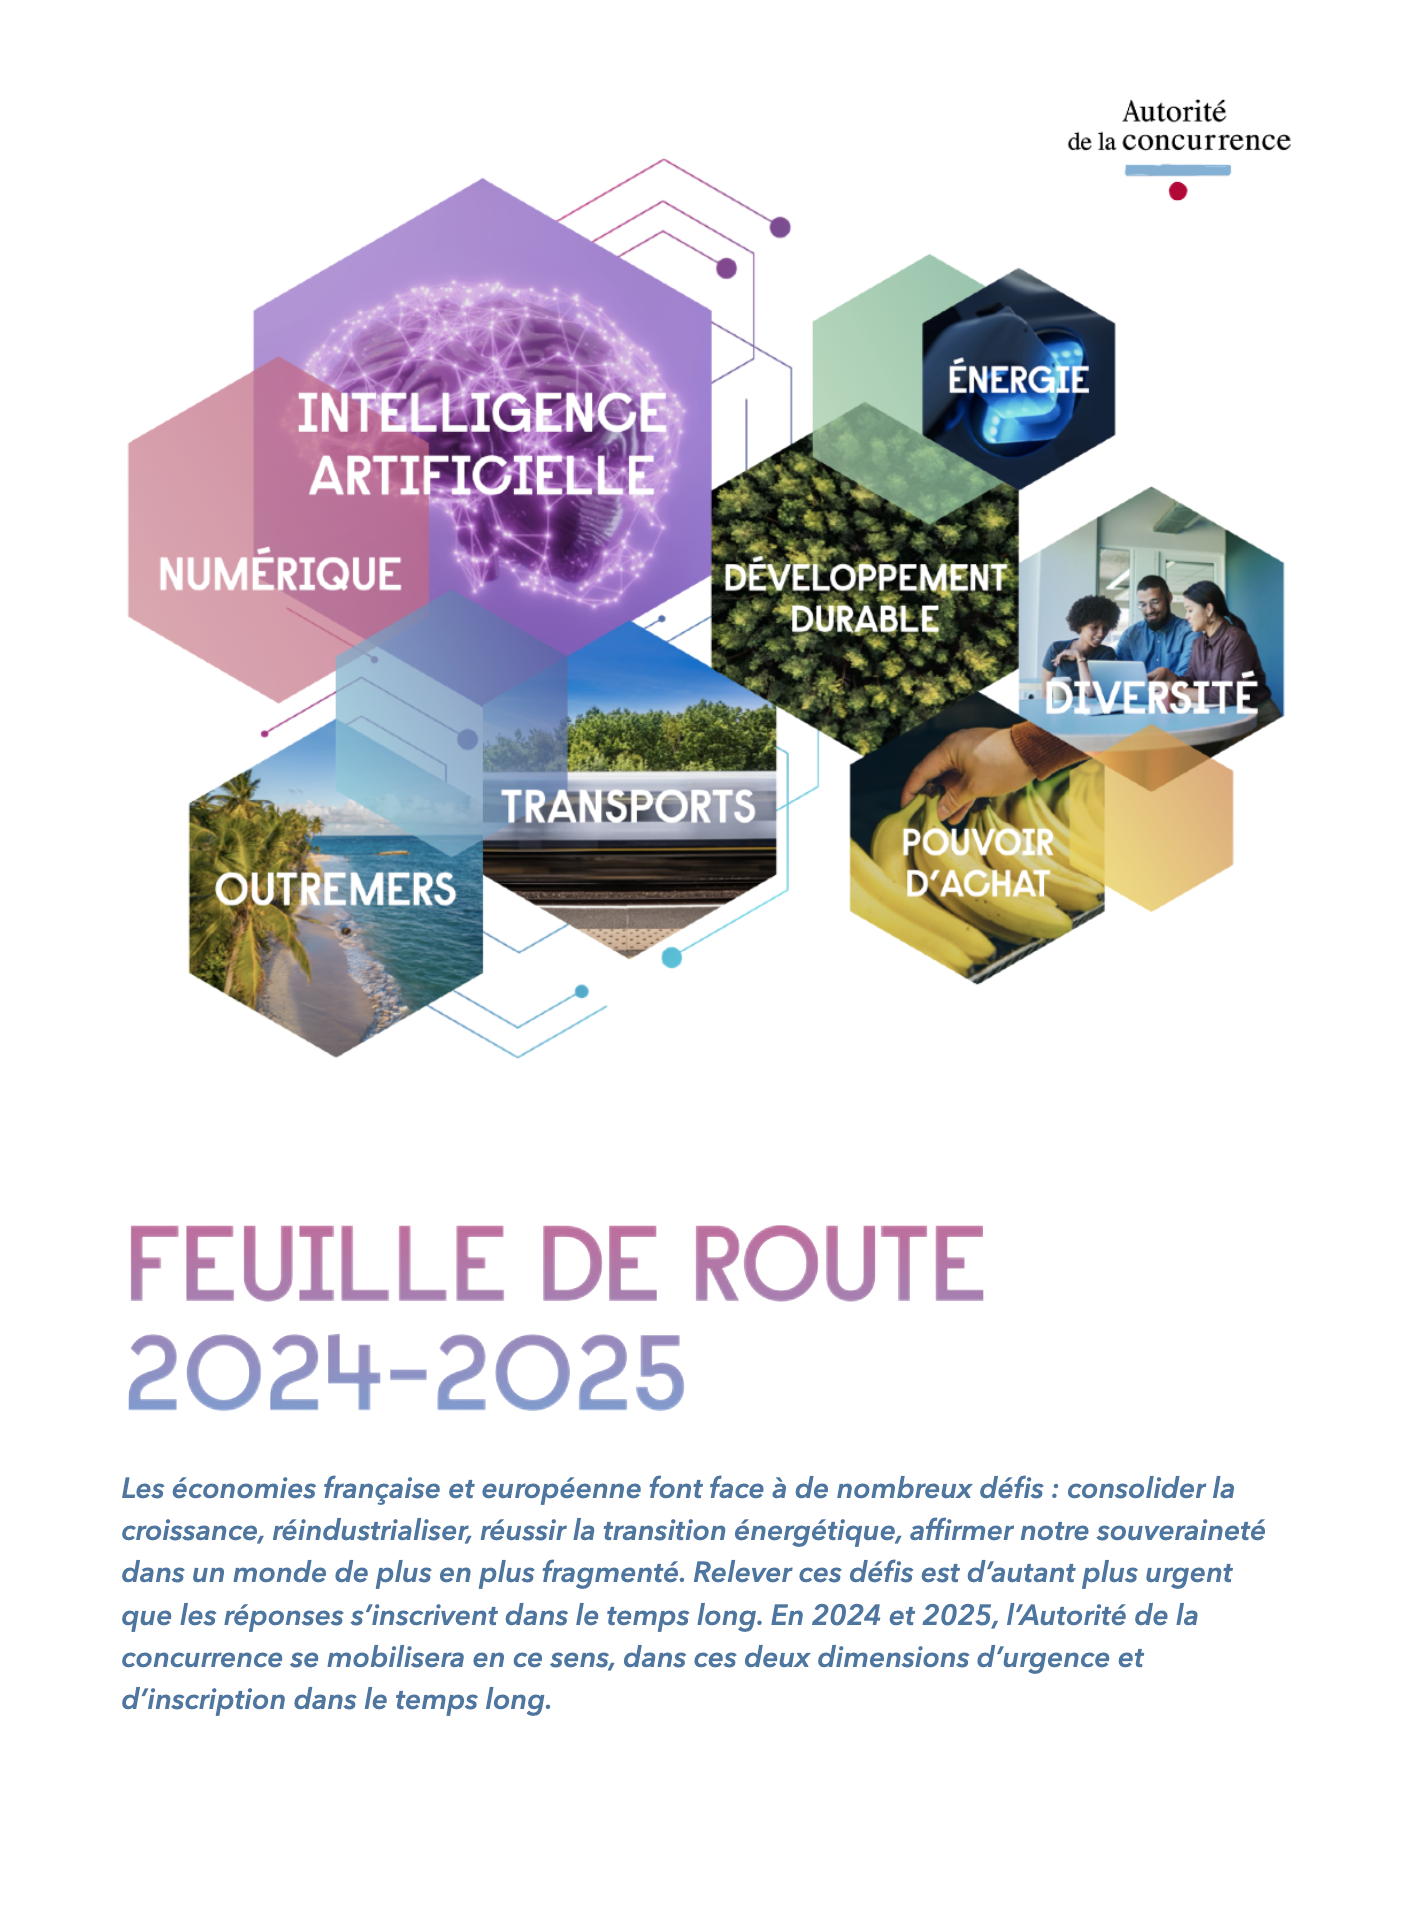 Roadmap 2024-2025